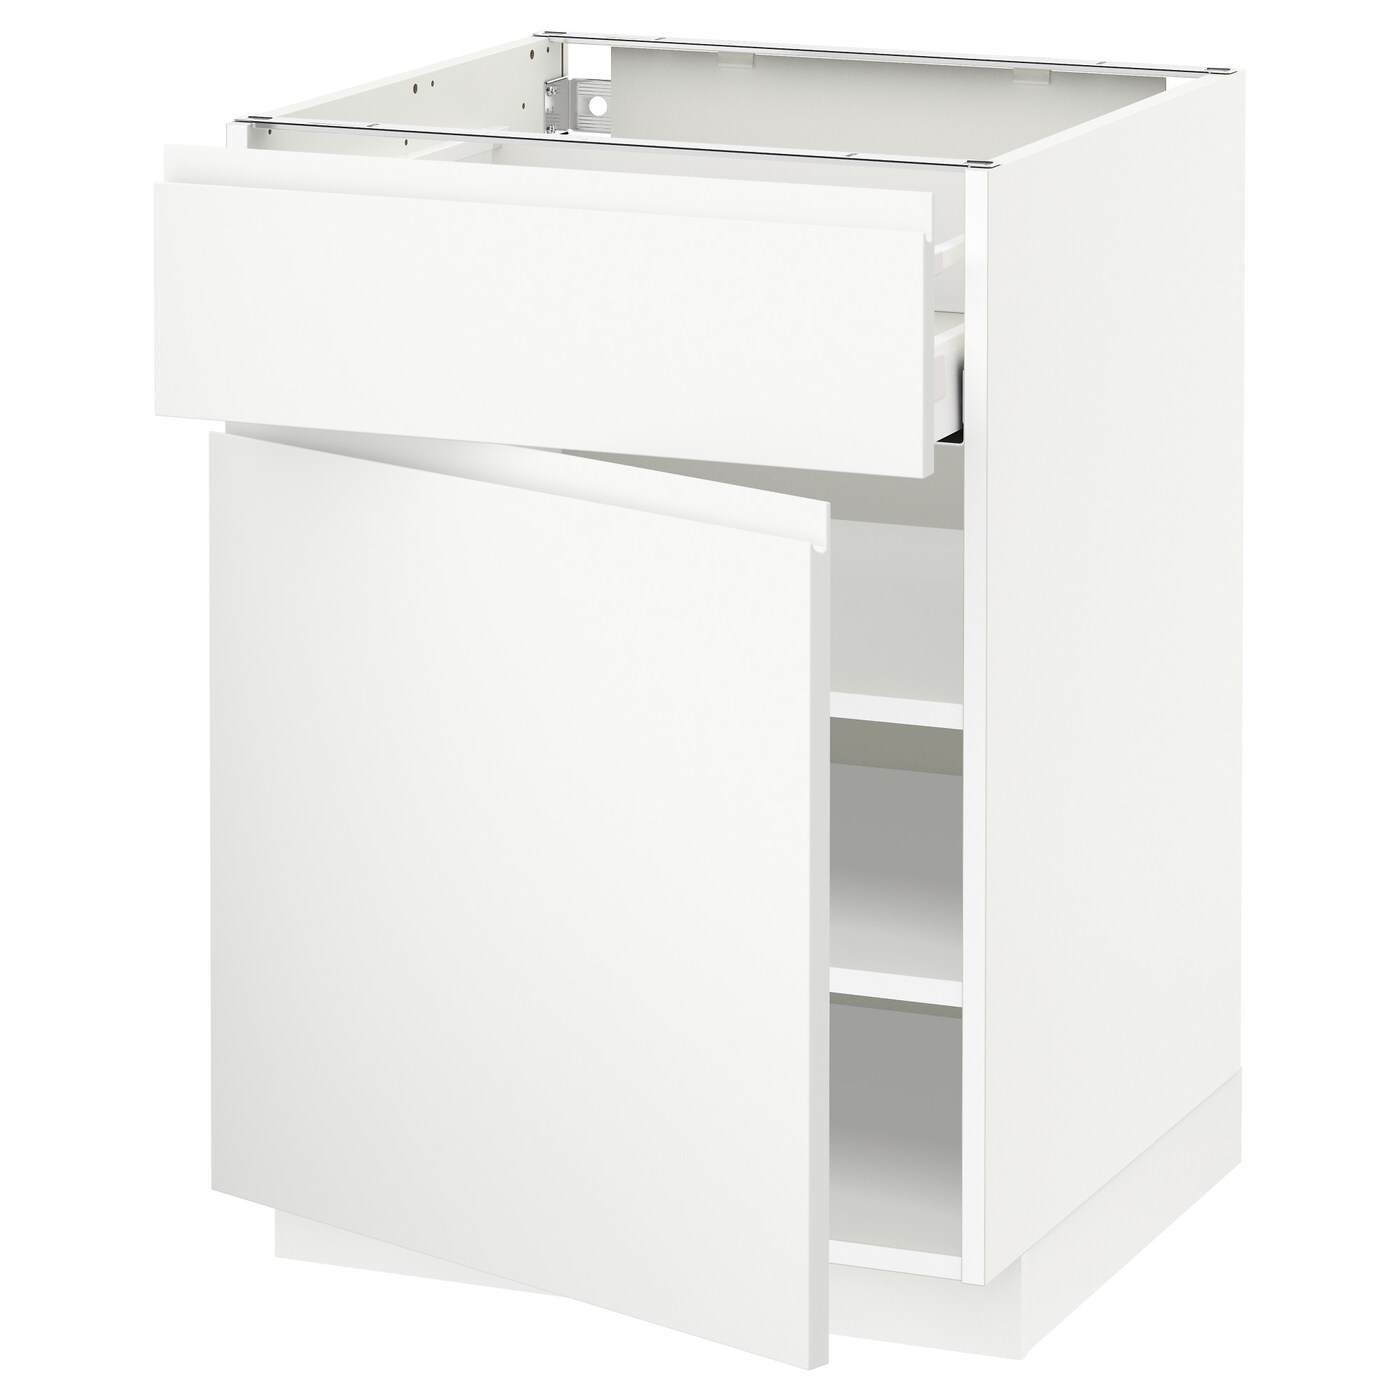 Напольный шкаф - IKEA METOD MAXIMERA, 88x60x62см, белый, МЕТОД МАКСИМЕРА ИКЕА